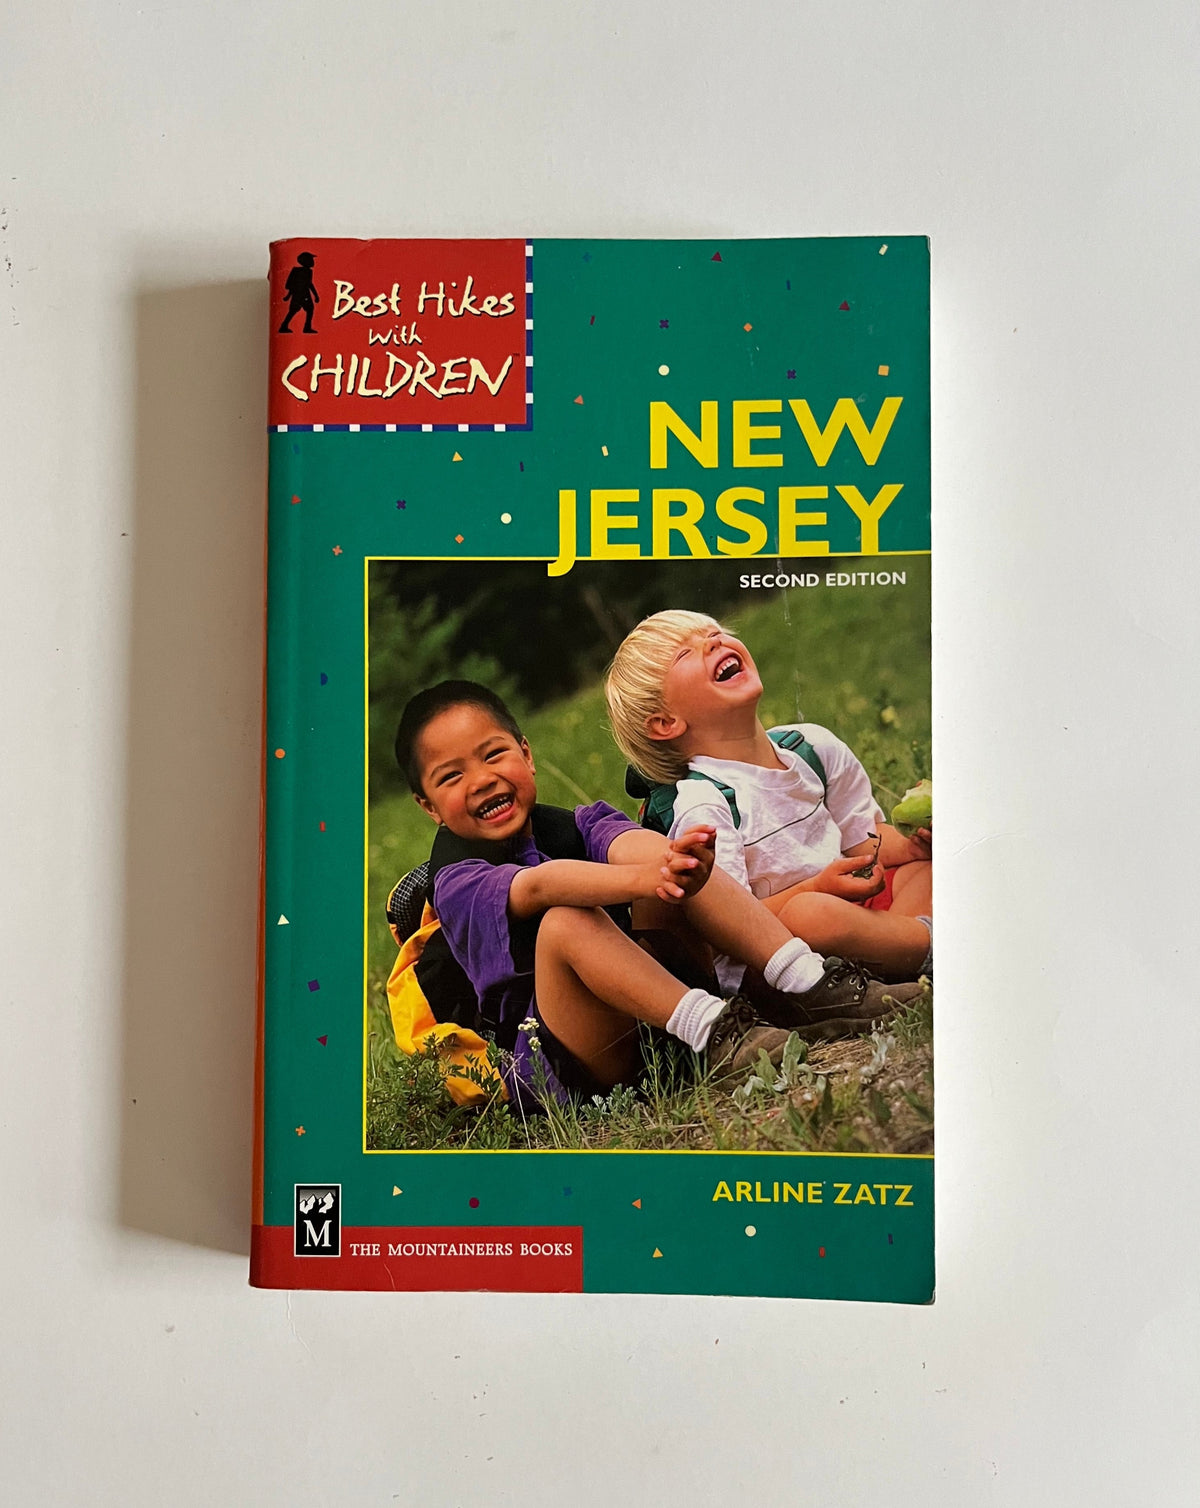 Best Hikes with Children: New Jersey by Arline Zatz